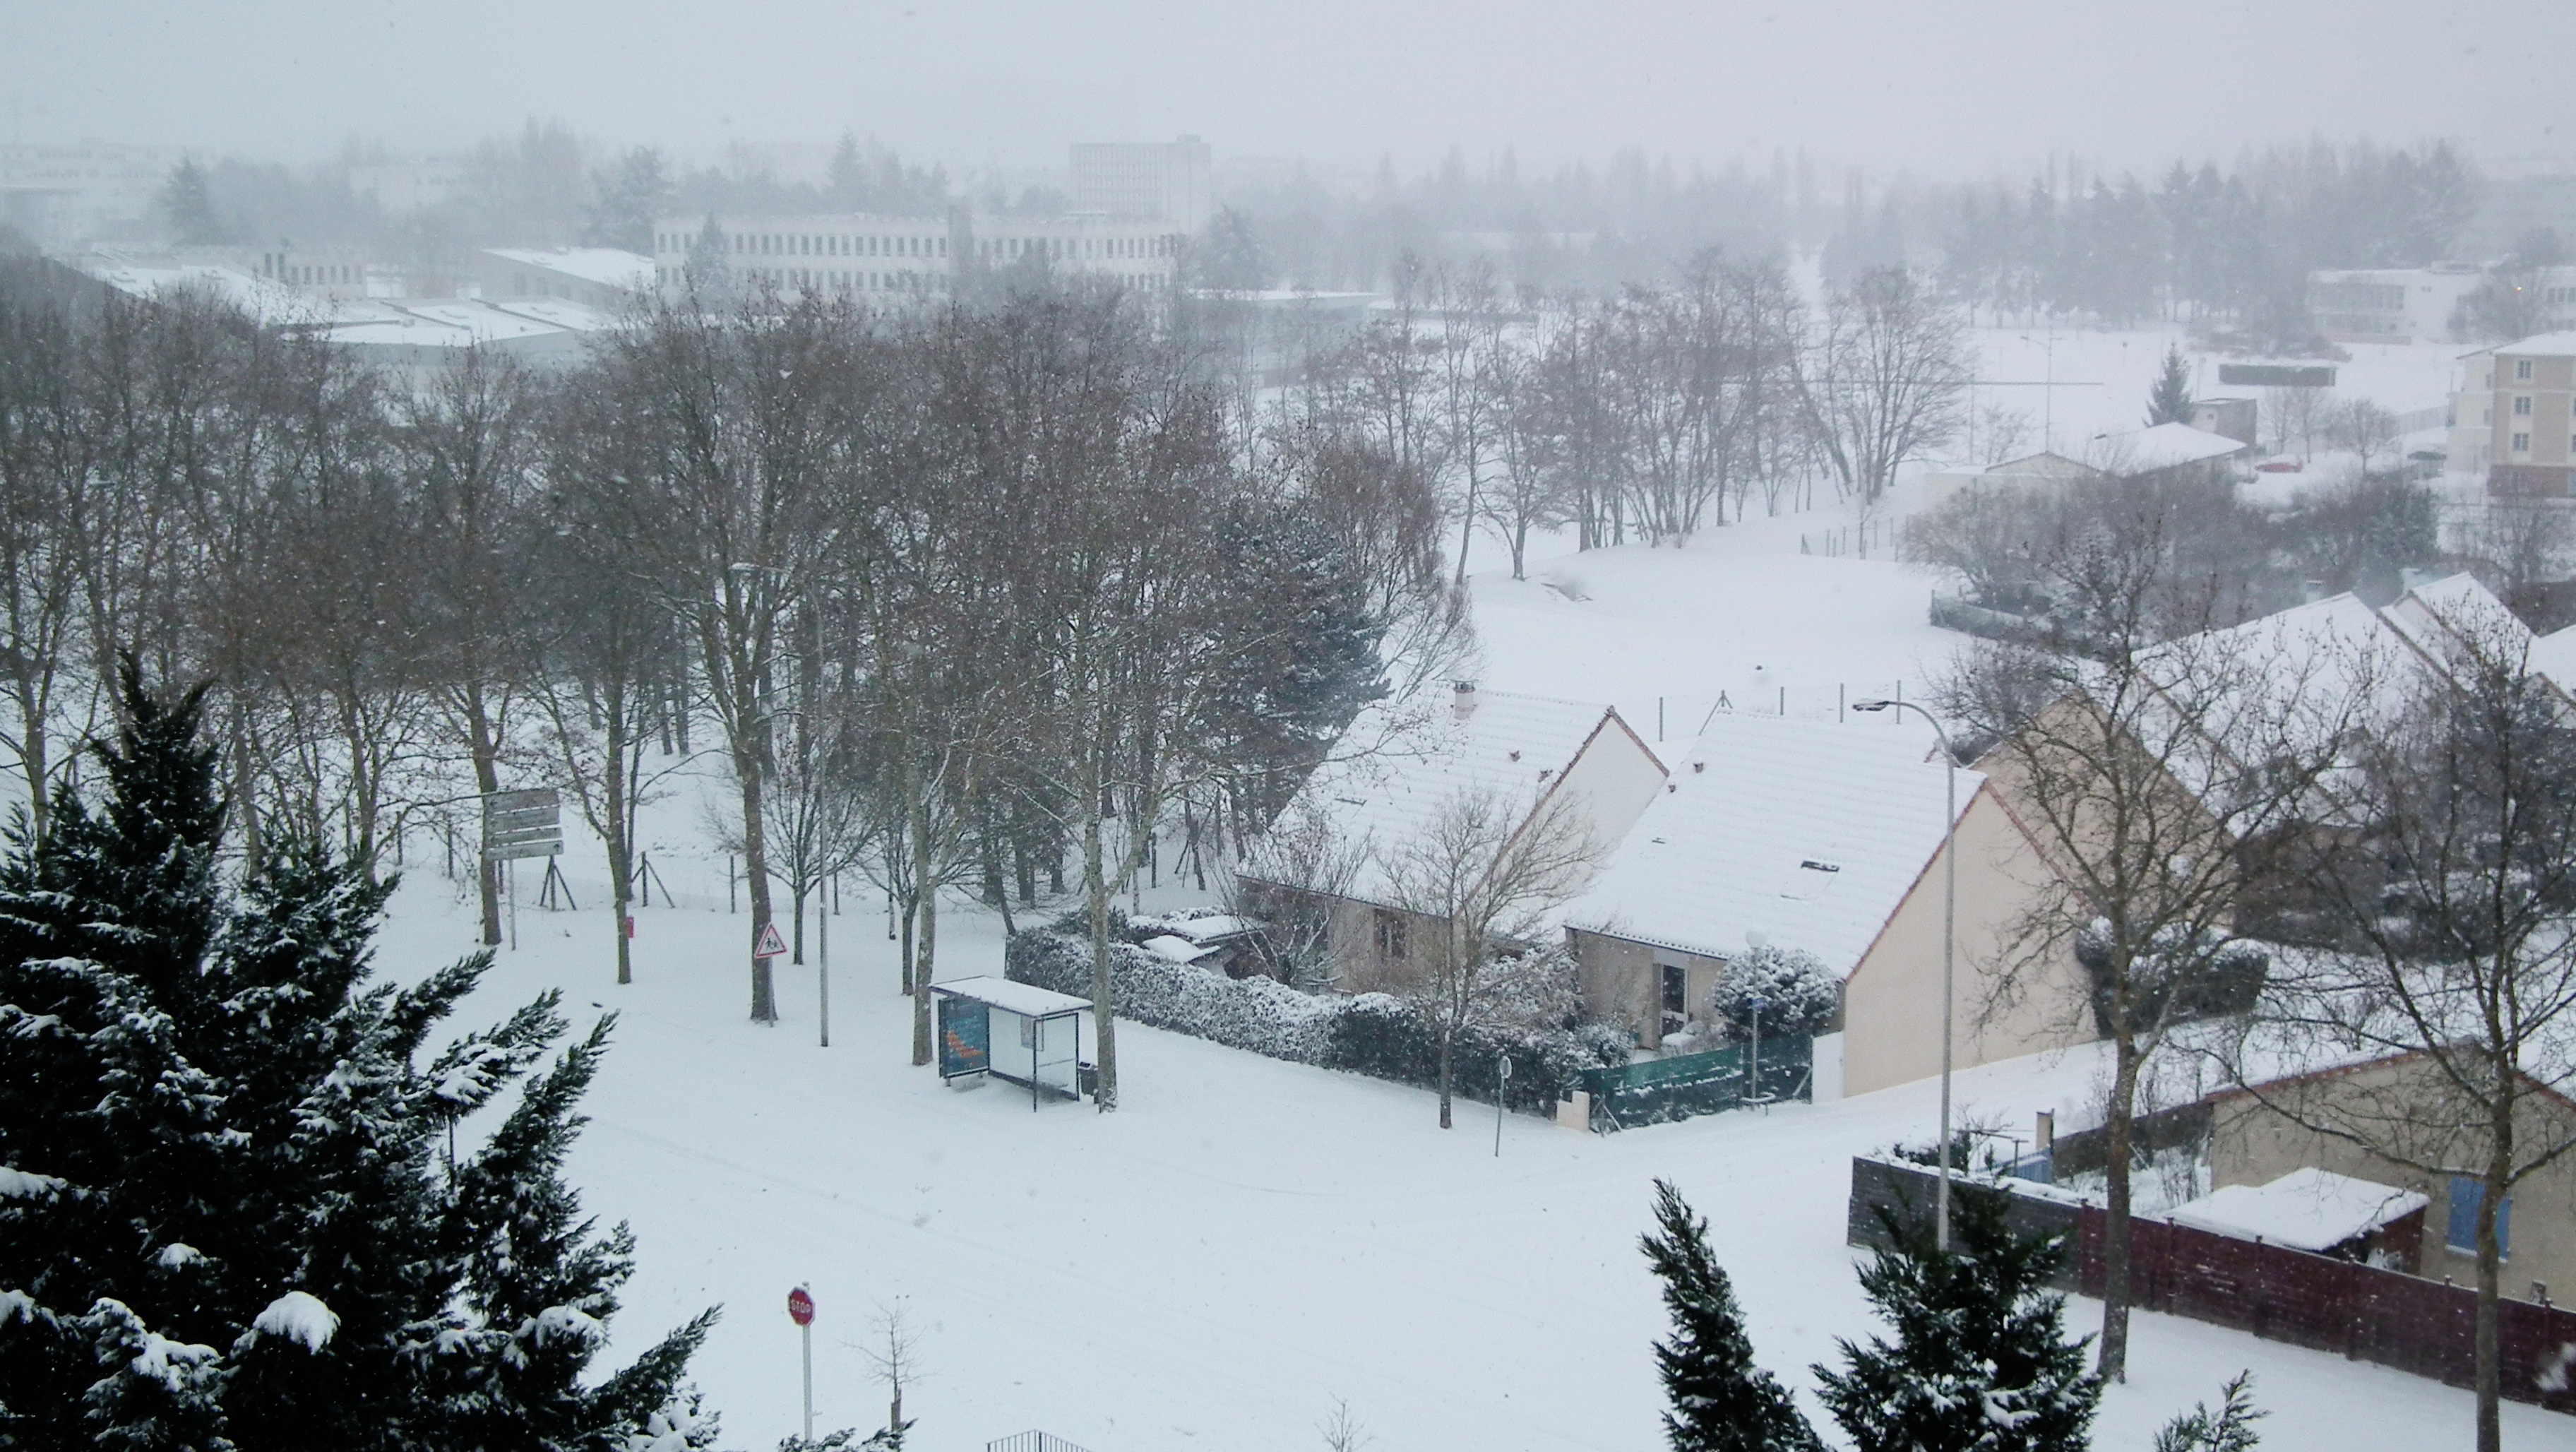 Beaulieu sous la neige (hiver 2011-2012) photo